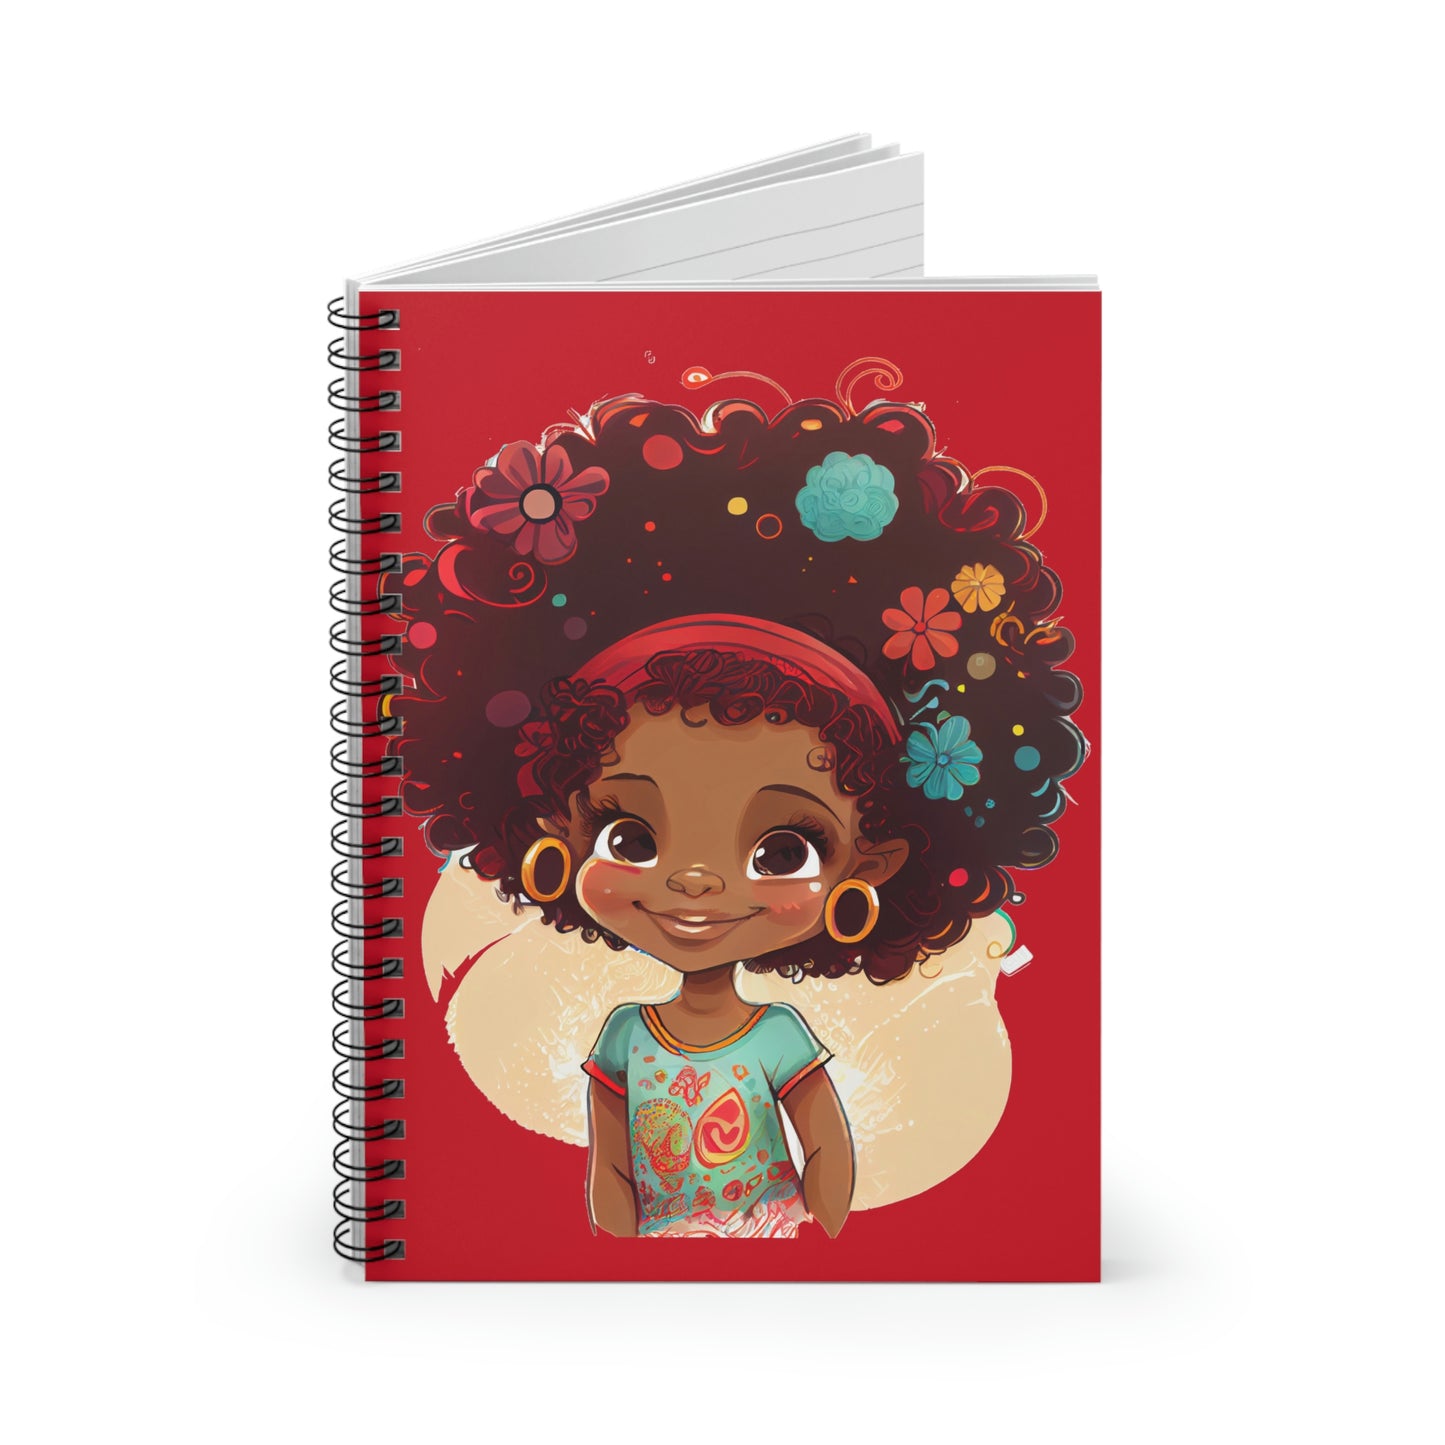 Curls Spiral Notebook/Journal